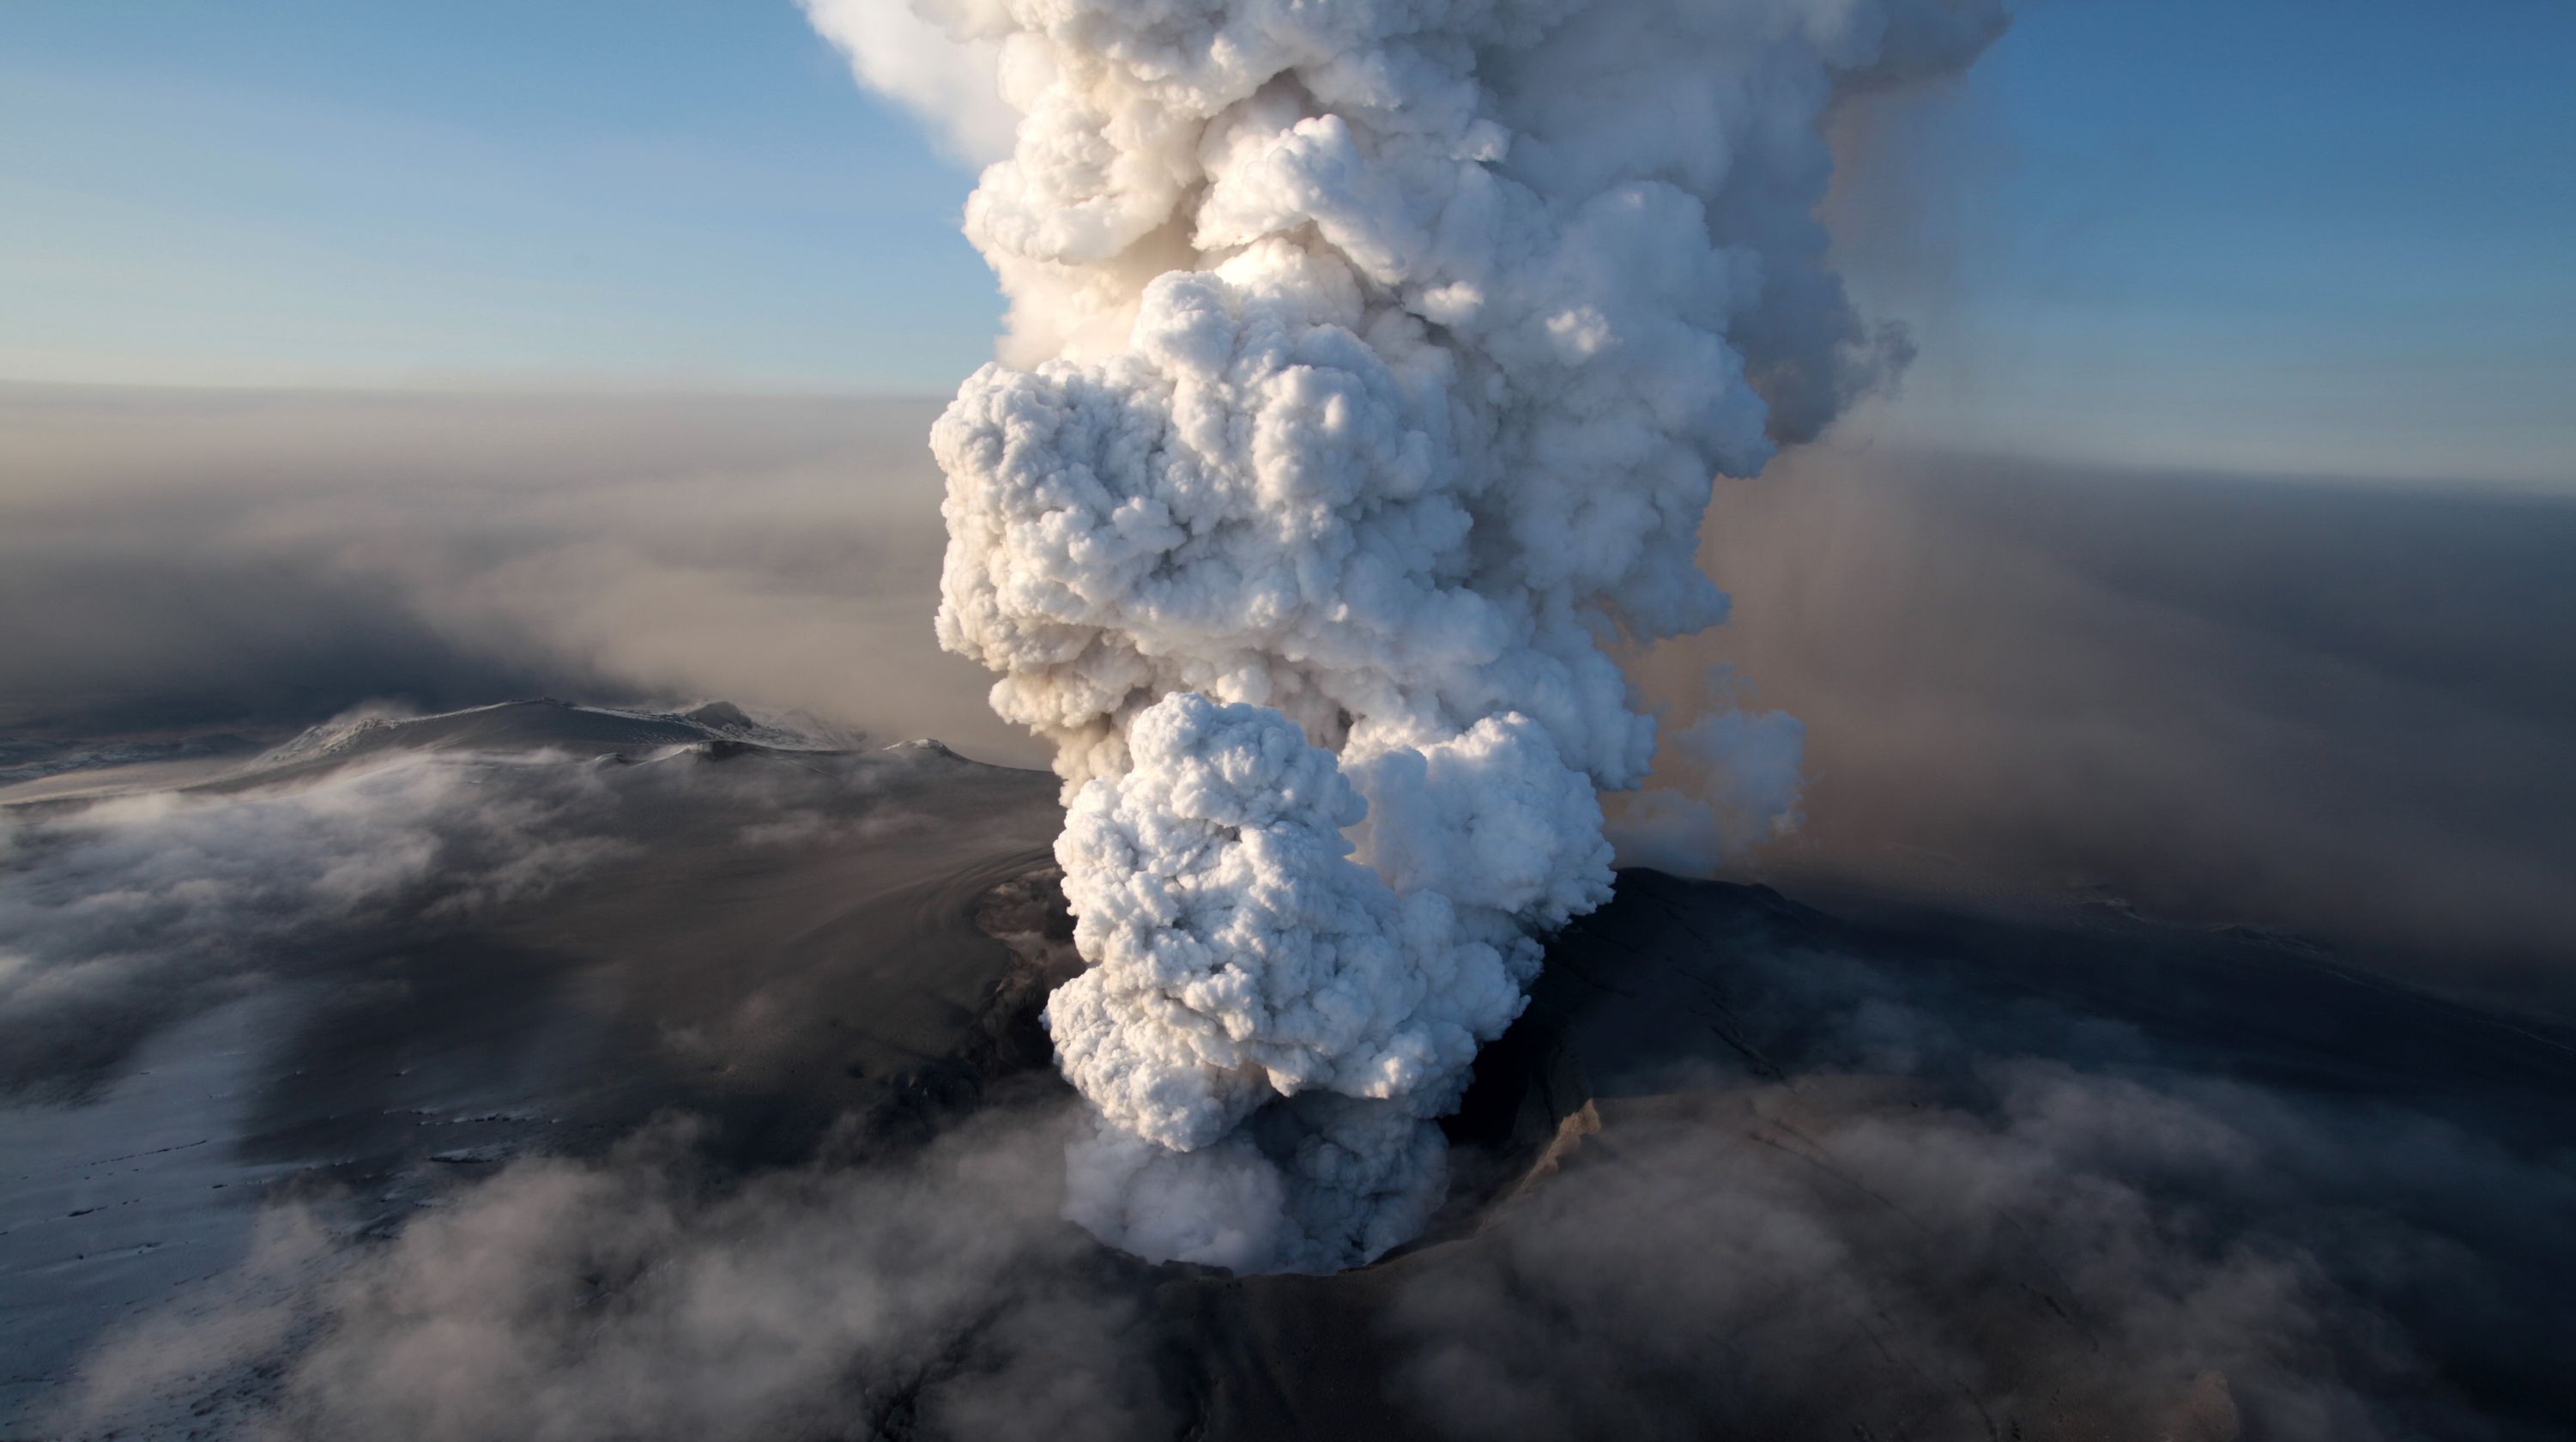 原创世界火山第一国国土靠火山喷发形成比江苏小却有超200座火山